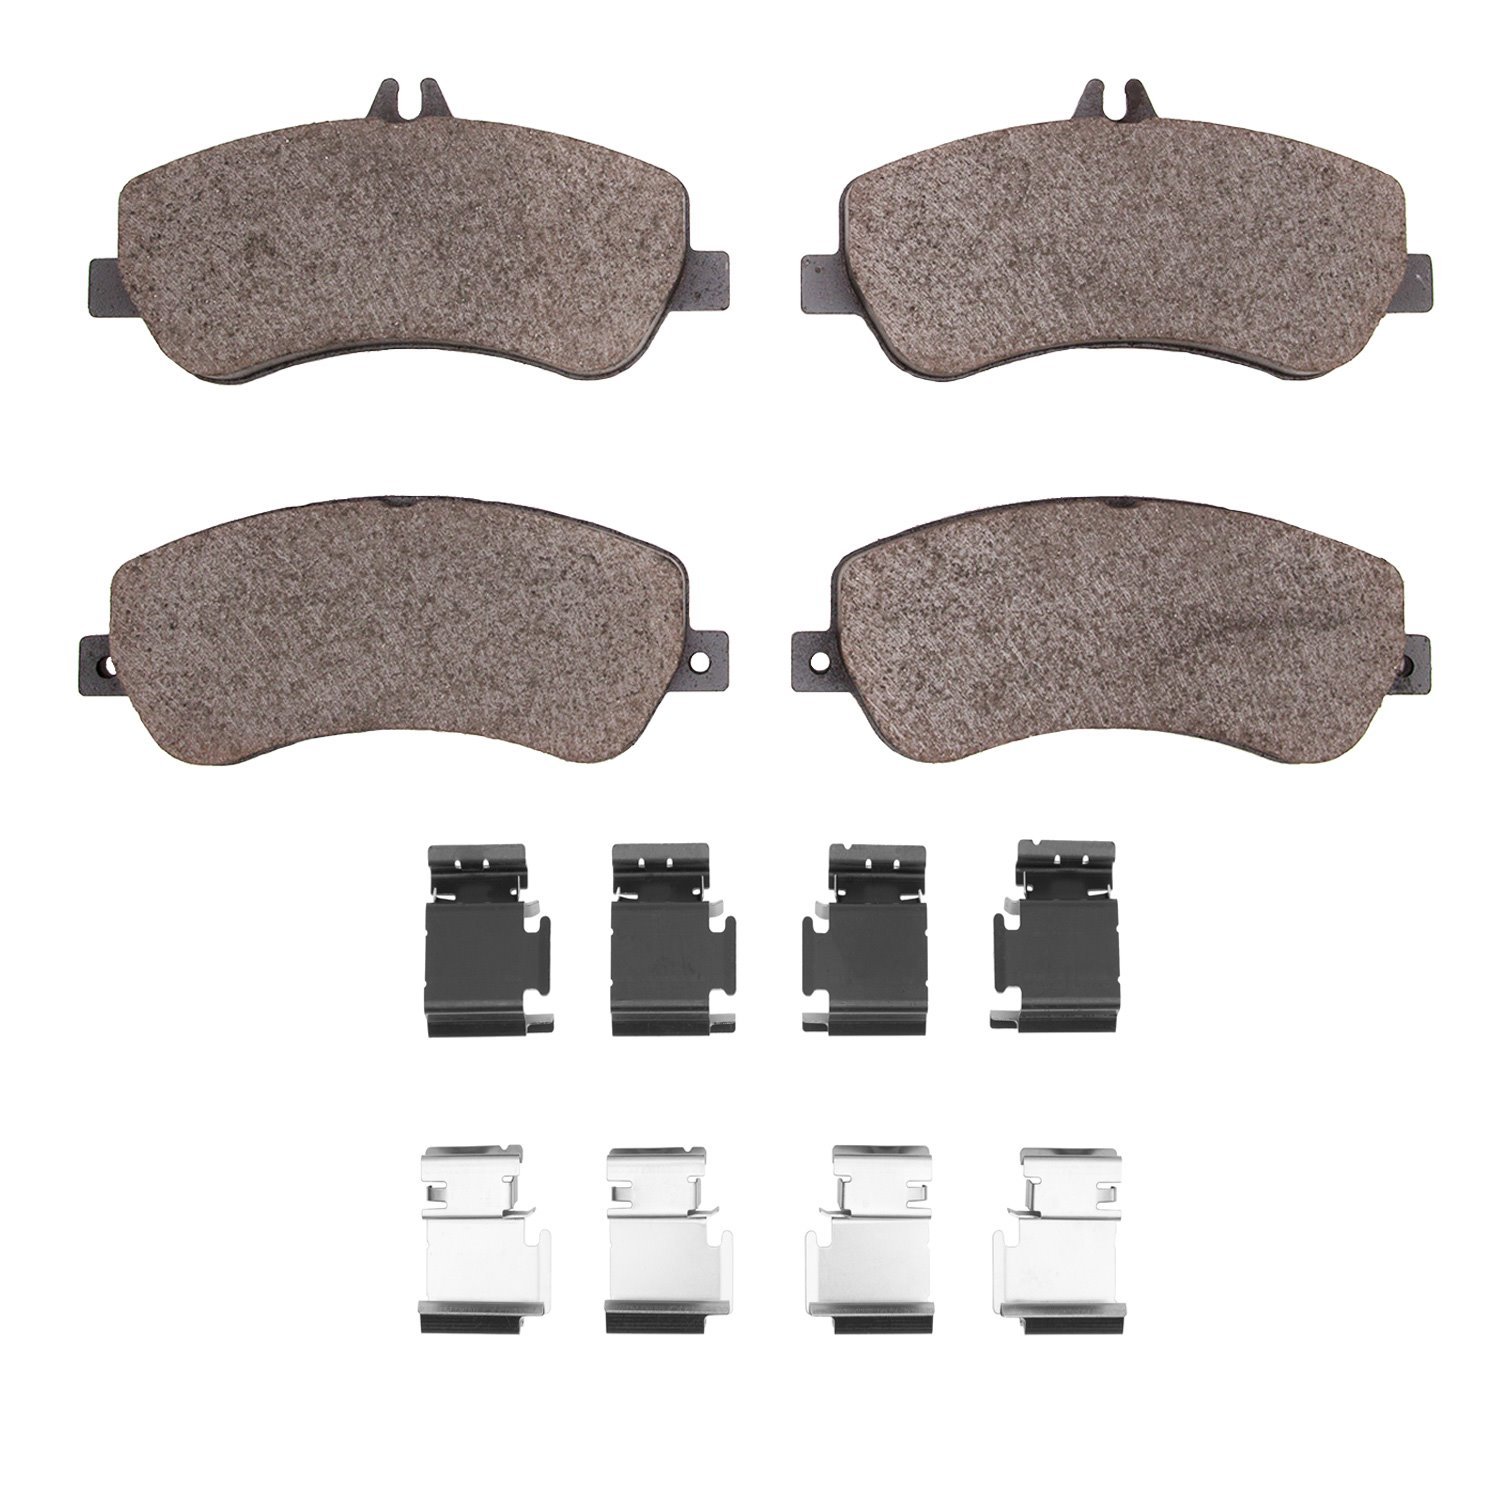 1311-1406-01 3000-Series Semi-Metallic Brake Pads & Hardware Kit, 2009-2015 Mercedes-Benz, Position: Front